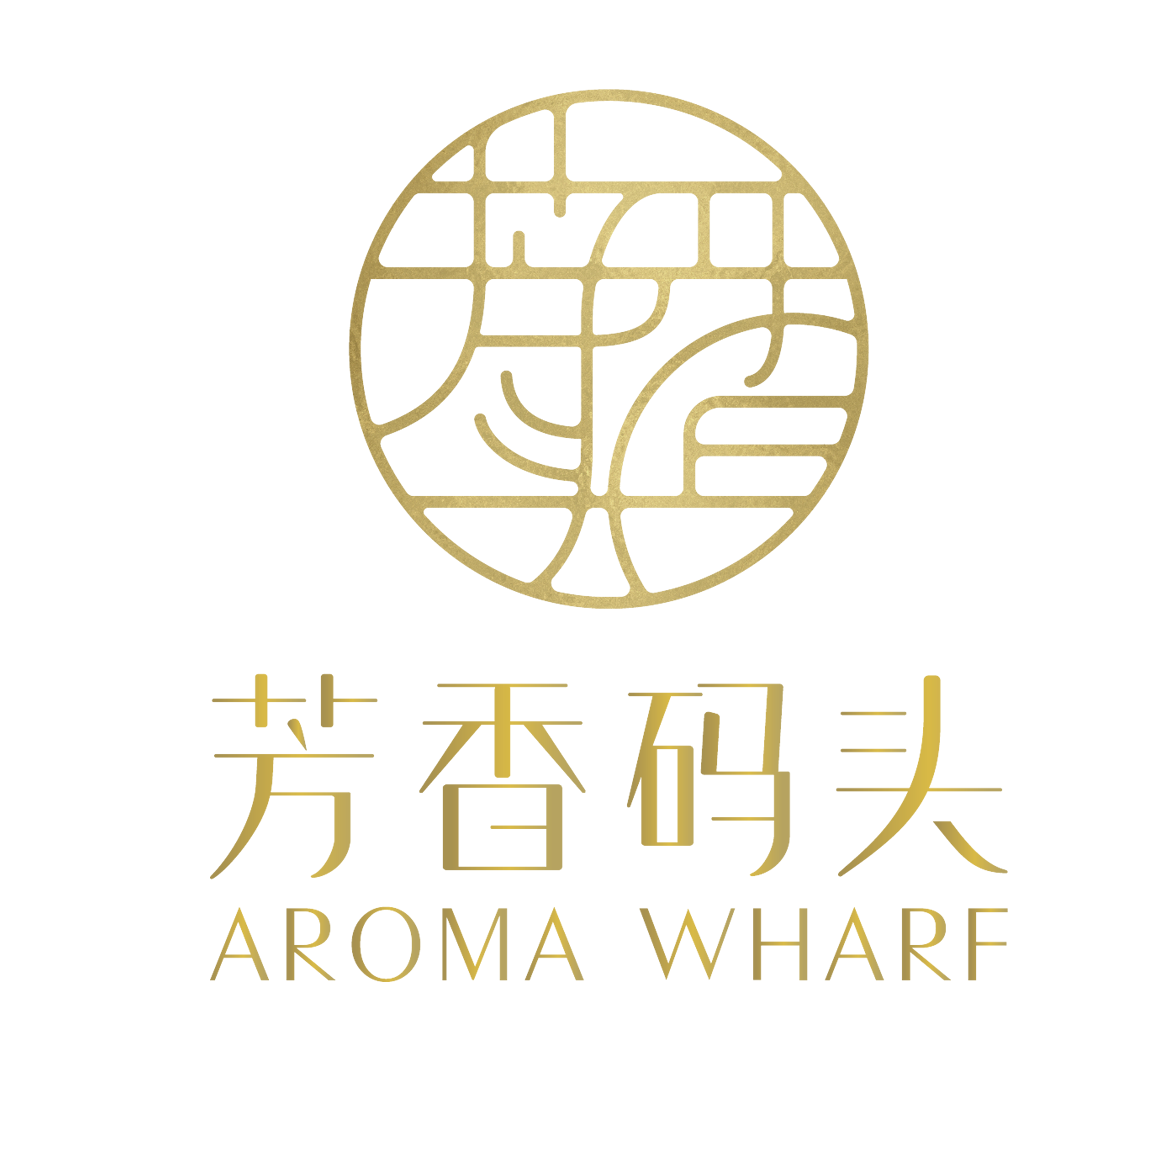 宁波芳香码头生物科技有限公司<br>Ningbo Aroma Wharf Biotechnology Co. Ltd.